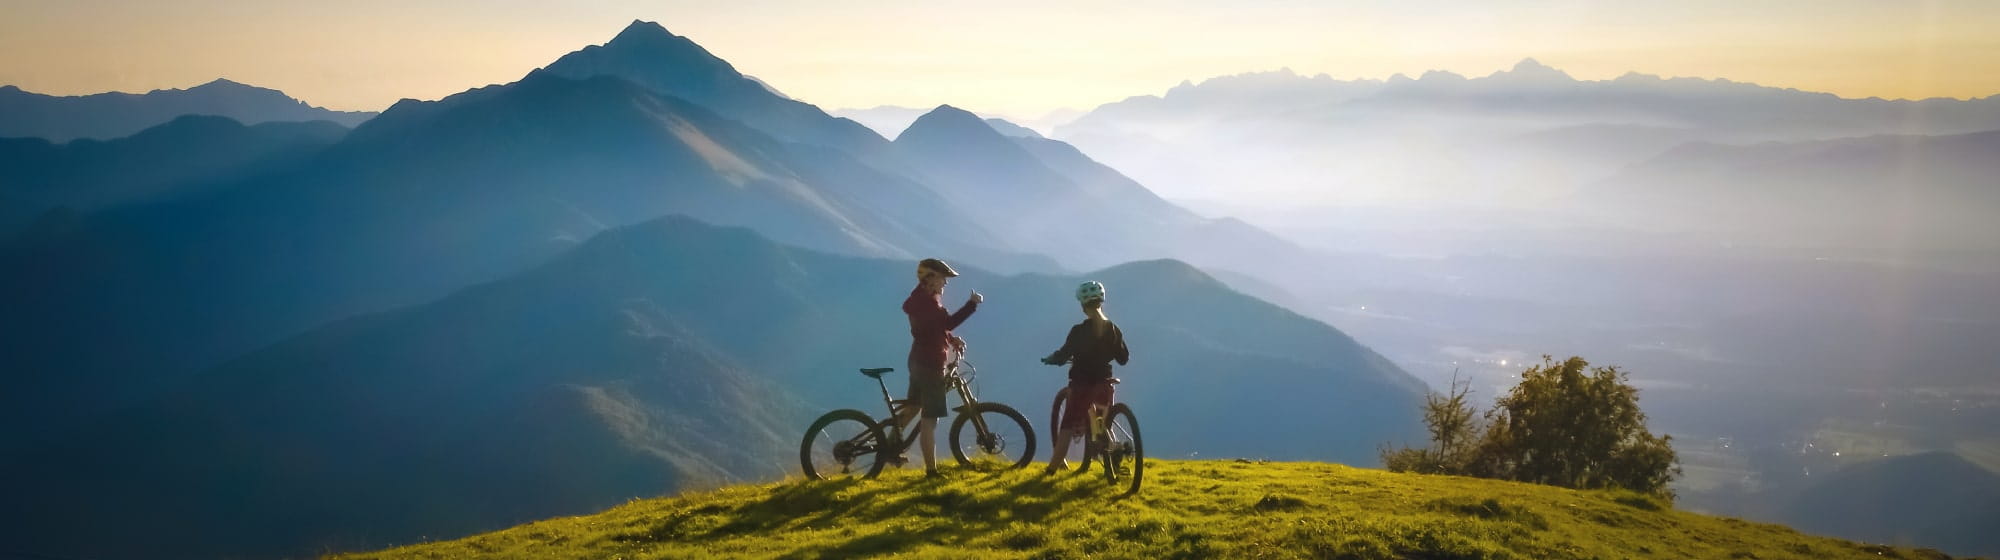 Faire du vélo en montagne